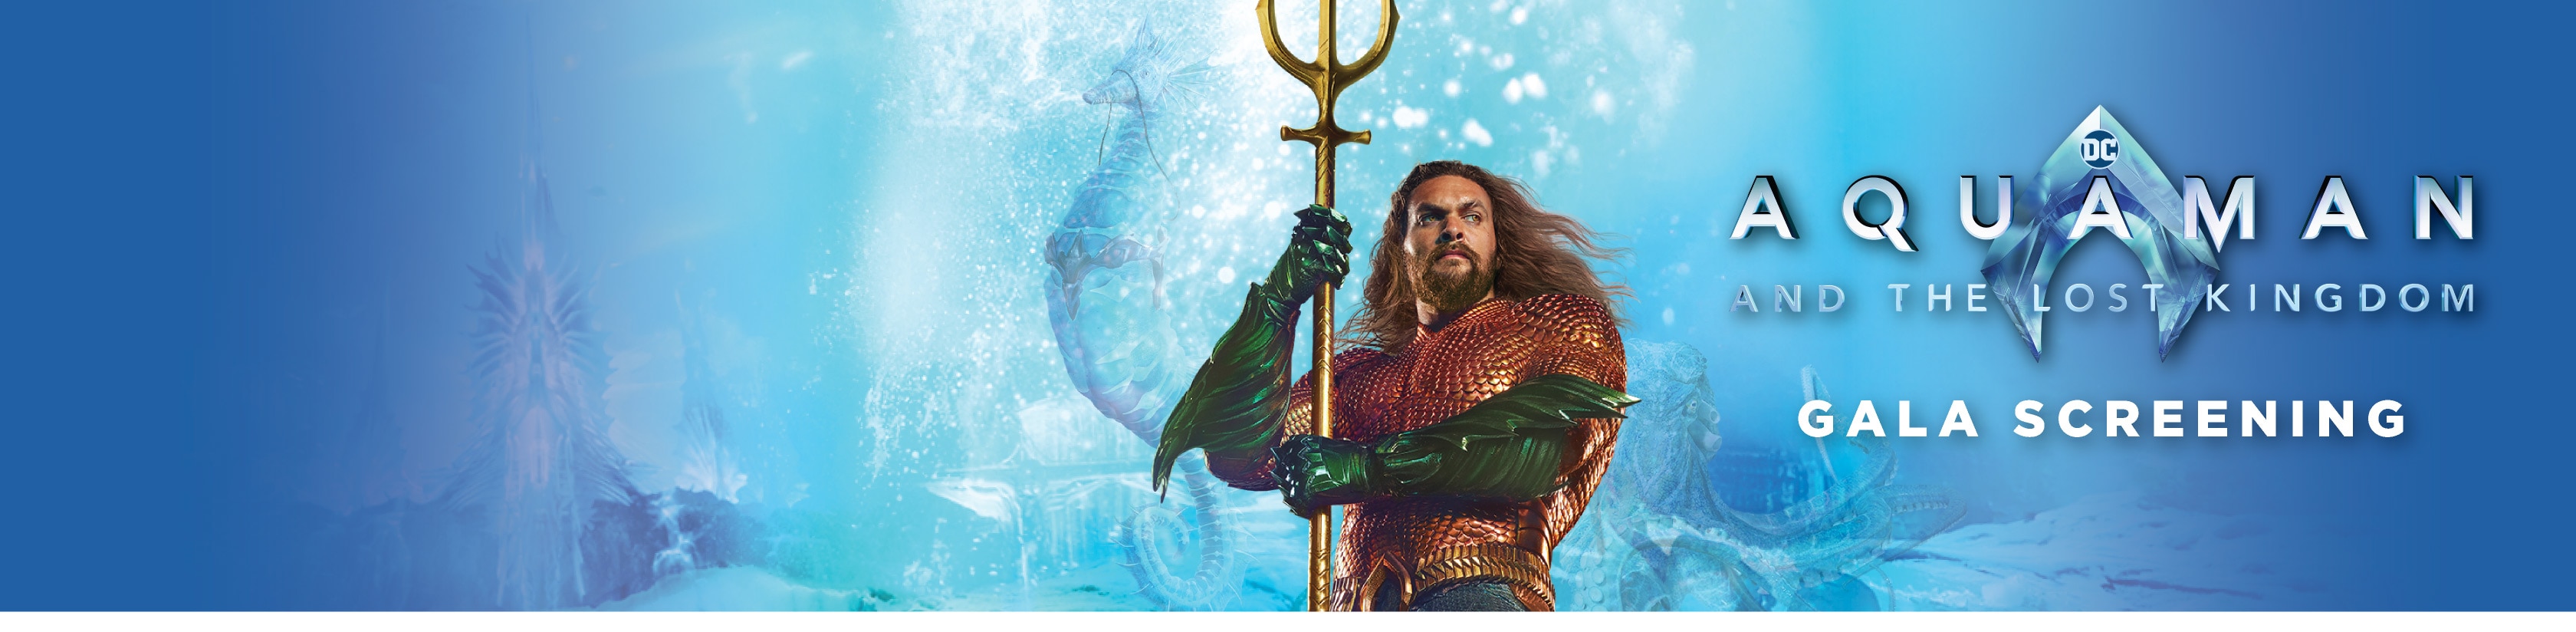 Aquaman and the Lost Kingdom Gala Screening at Warner Bros. World™ Abu Dhabi